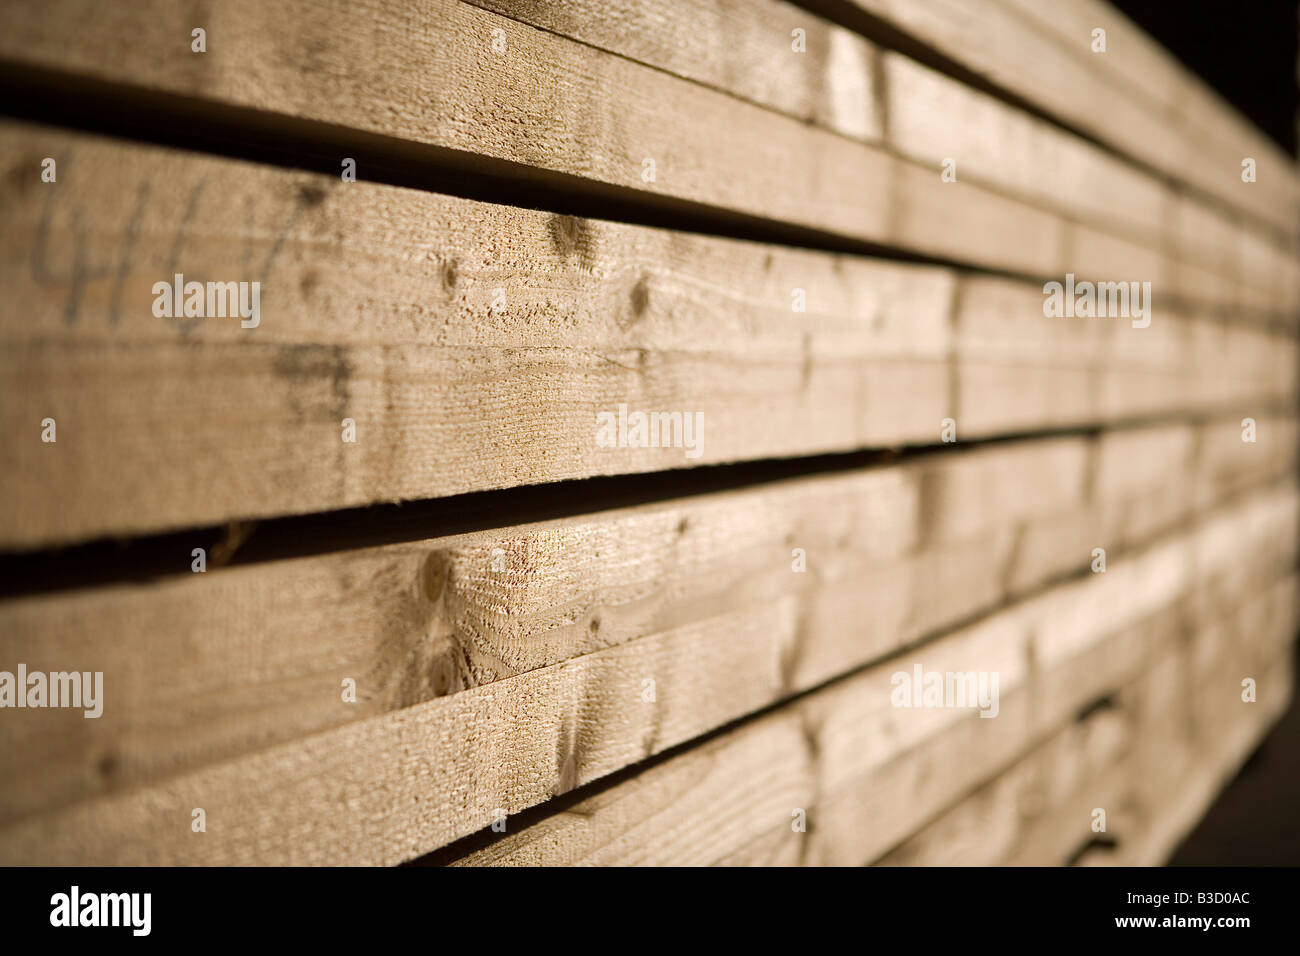 Wooden beams, close-up Stock Photo